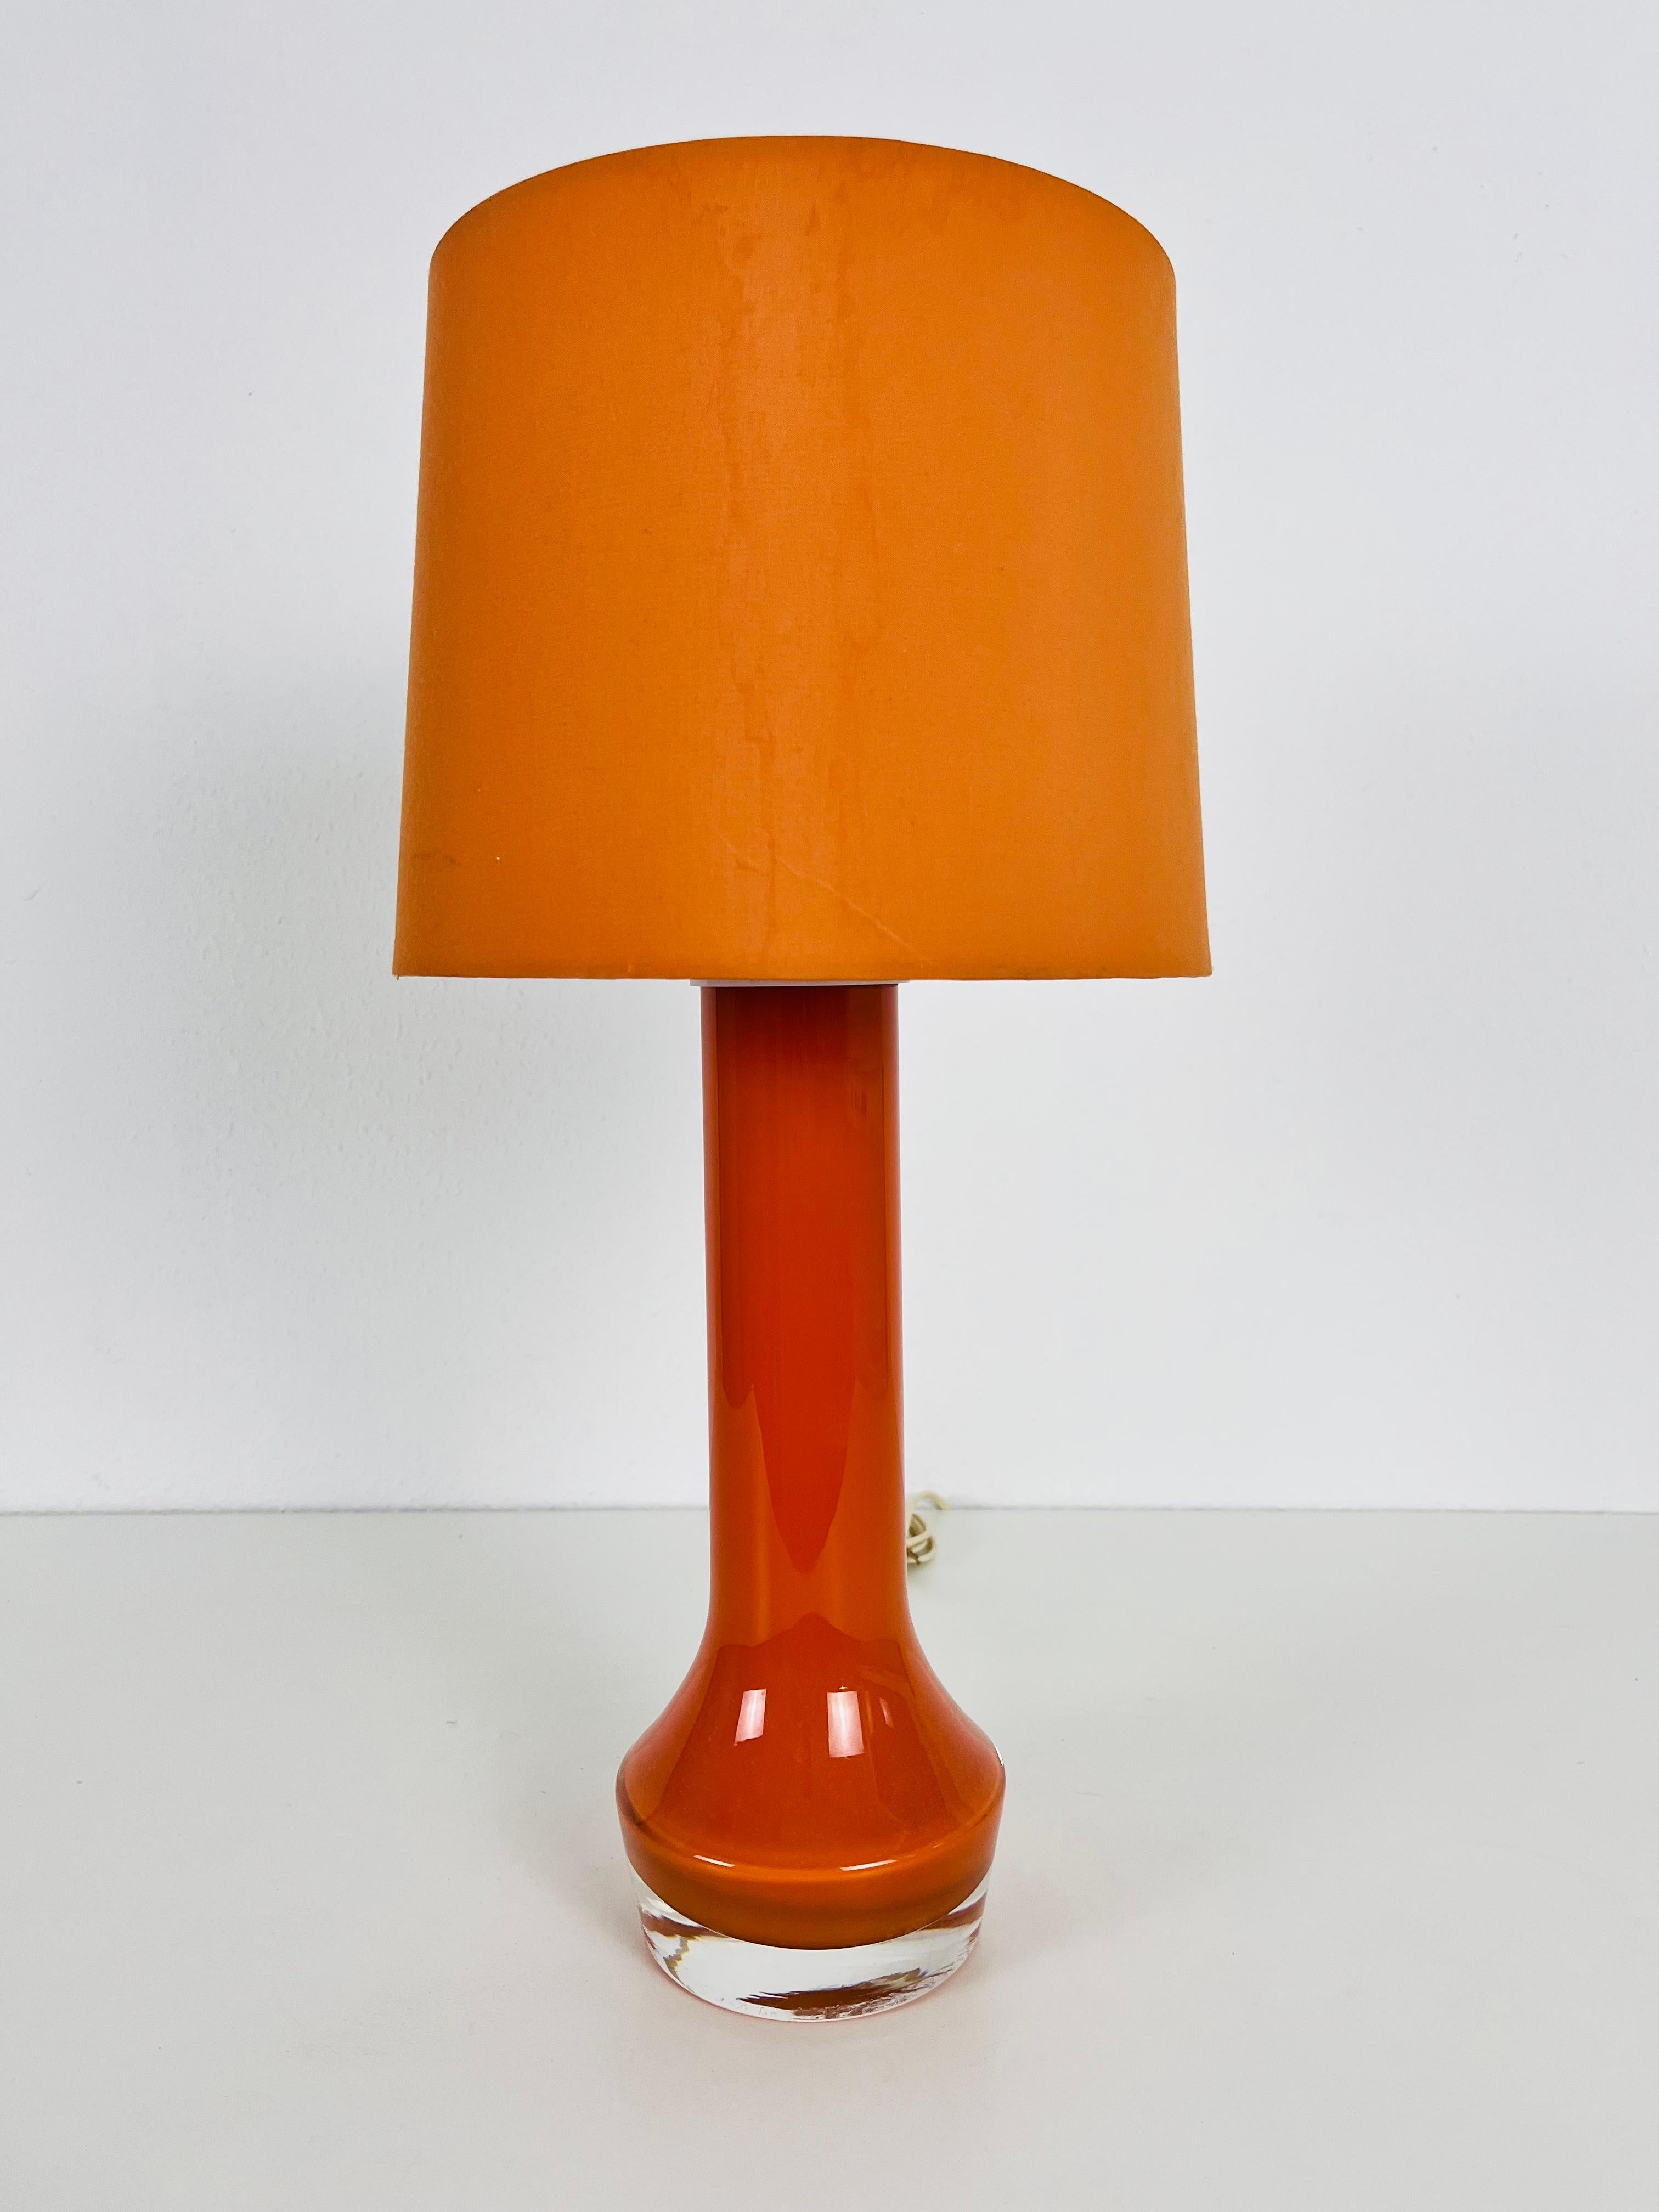 Une belle grande lampe de table fabriquée dans les années 1960. La base est faite de verre lourd de couleur orange. L'abat-jour est en tissu et a une couleur orange foncé.

Le luminaire nécessite une ampoule E27. Fonctionne avec les deux 120/220 V.